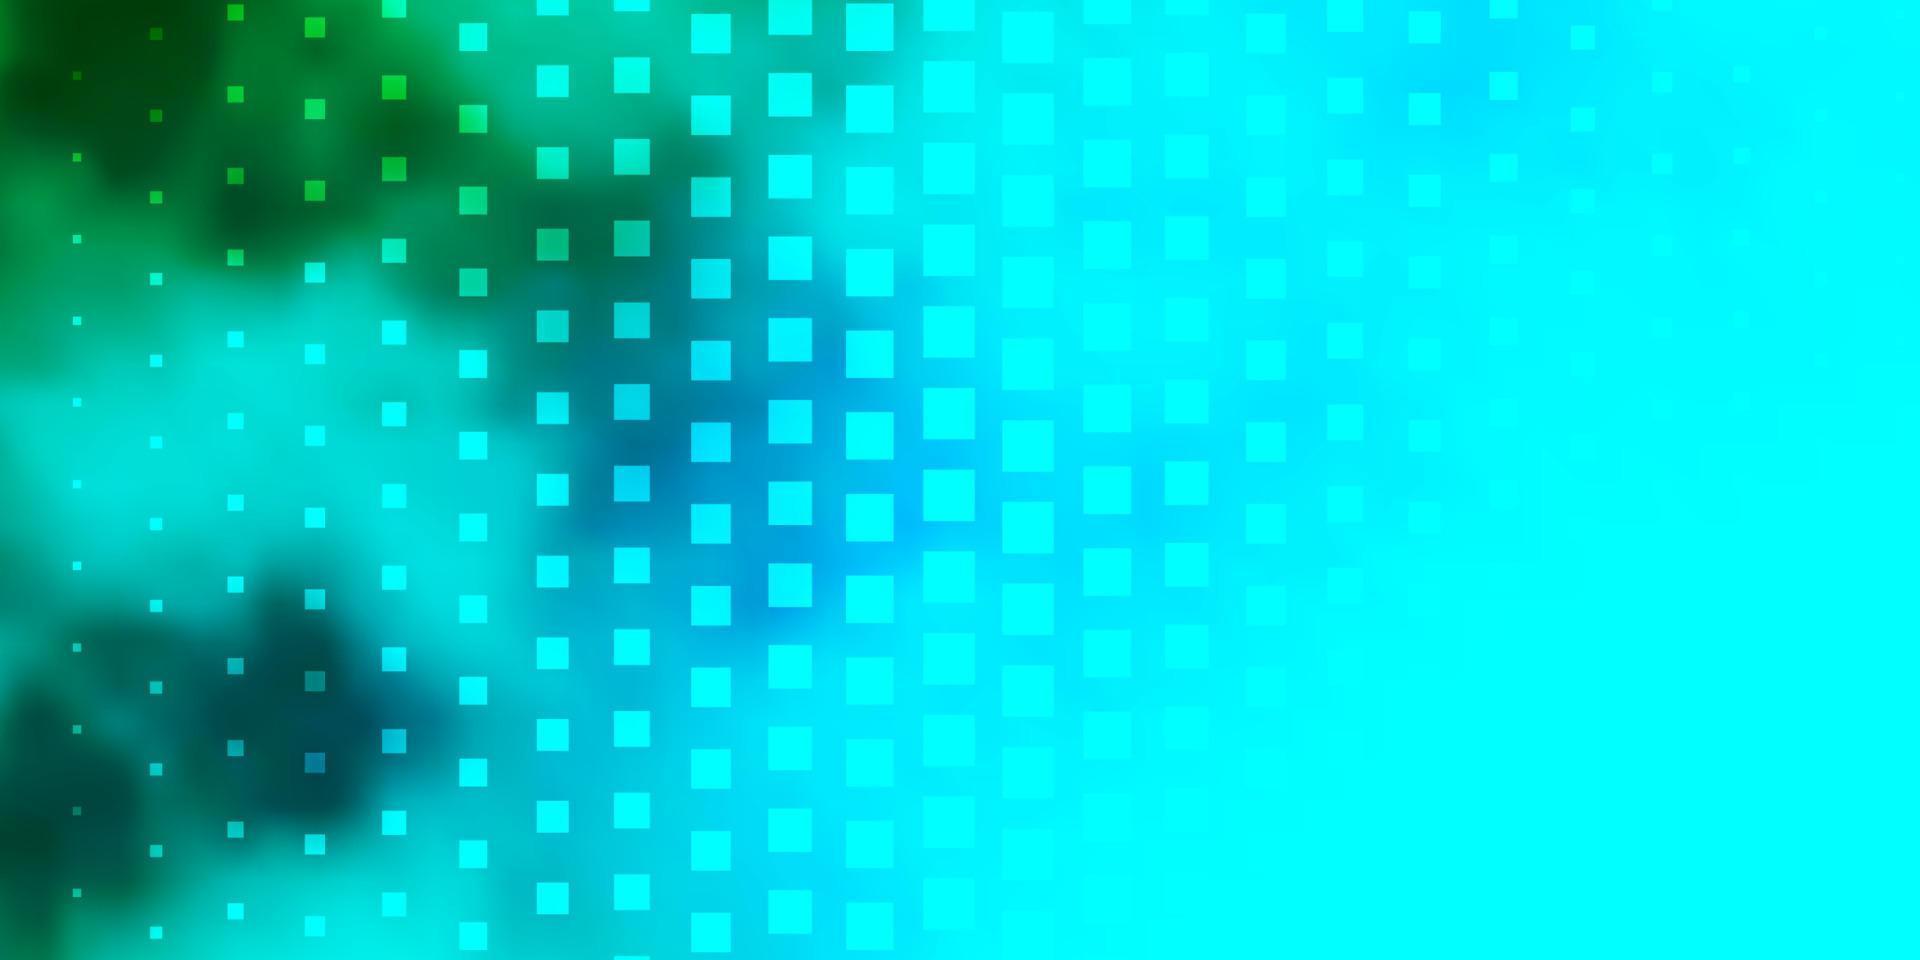 modèle vectoriel bleu clair, vert dans des rectangles.